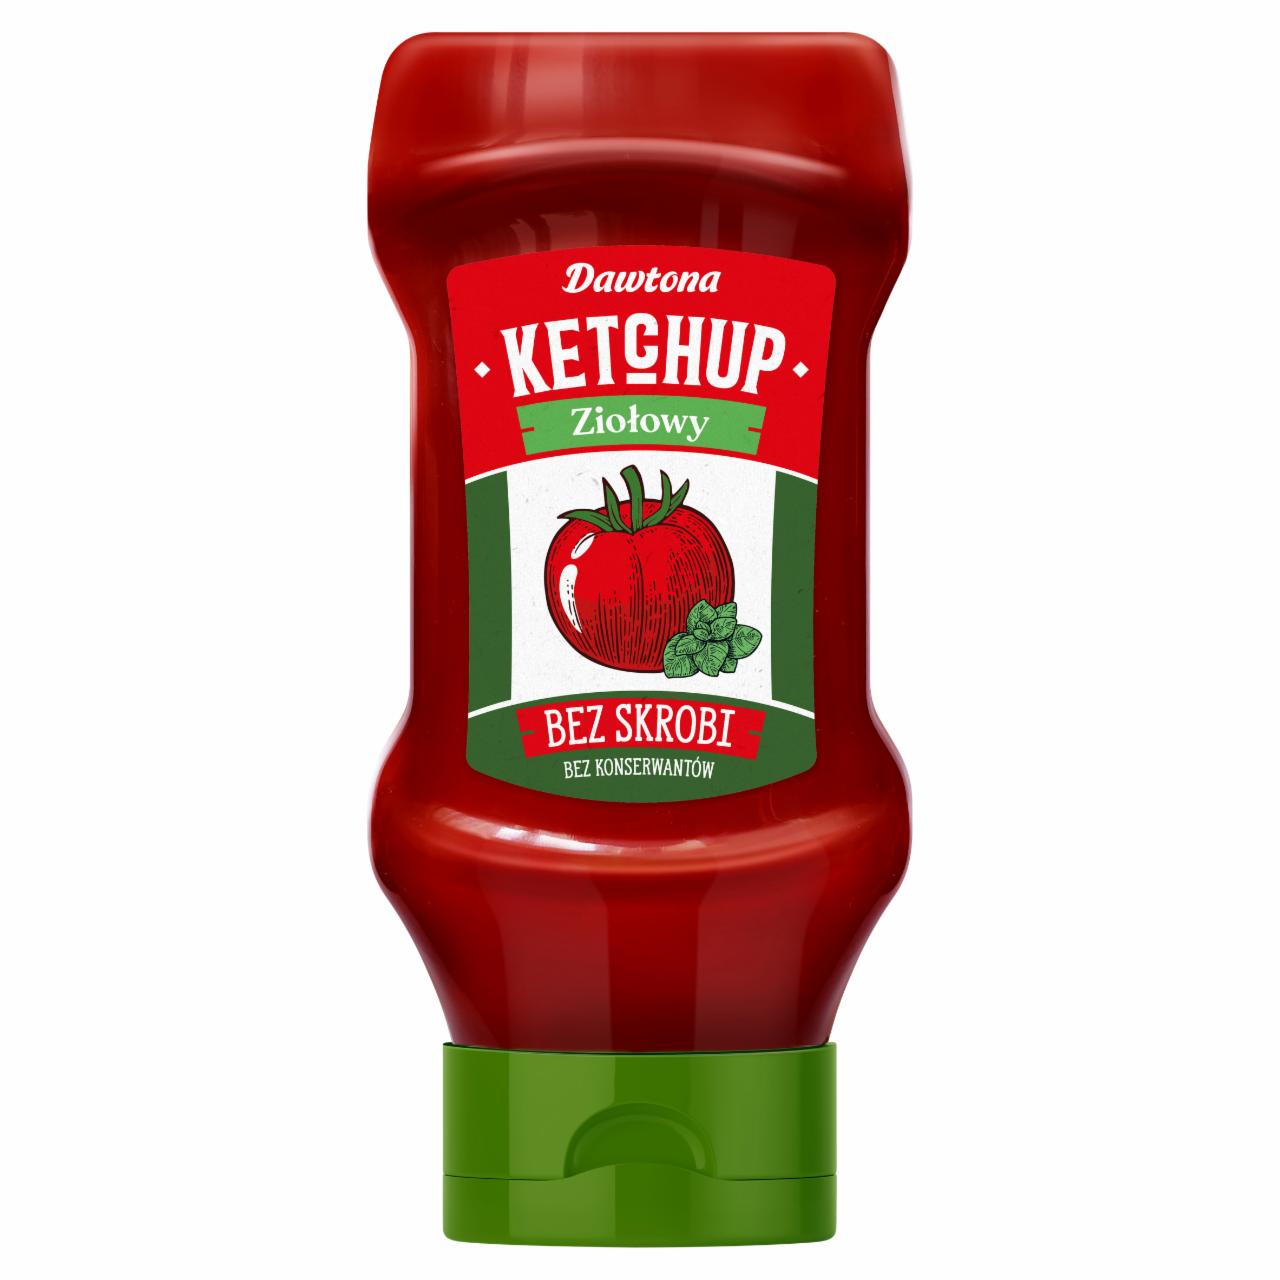 Zdjęcia - Dawtona Ketchup ziołowy 450 g